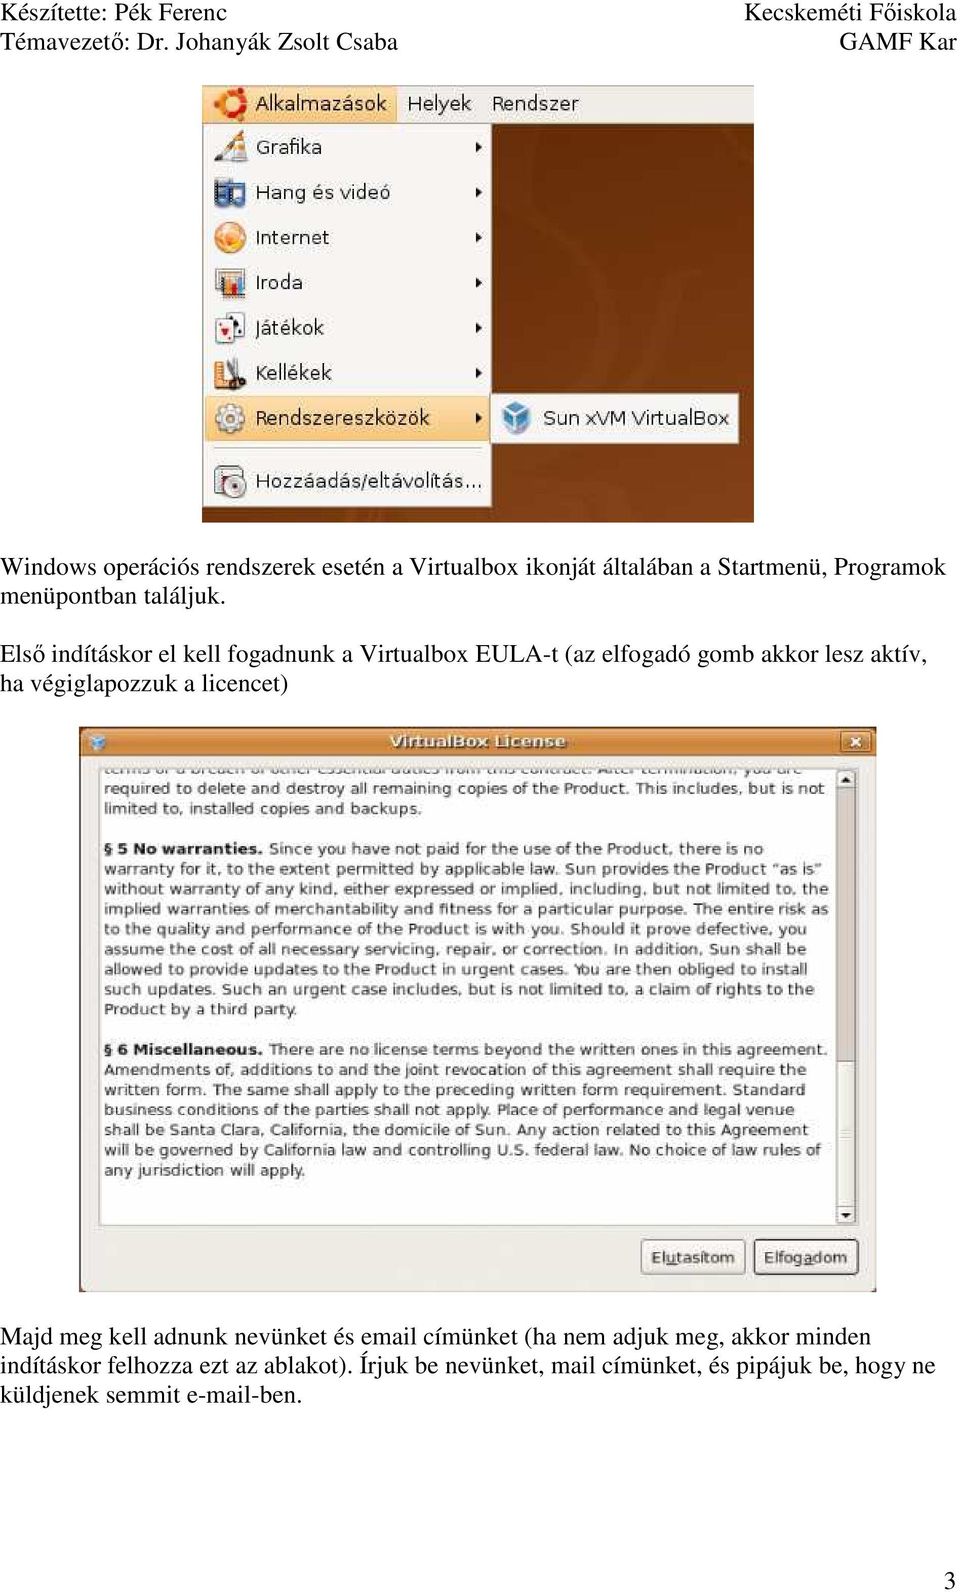 Elsı indításkor el kell fogadnunk a Virtualbox EULA-t (az elfogadó gomb akkor lesz aktív, ha végiglapozzuk a